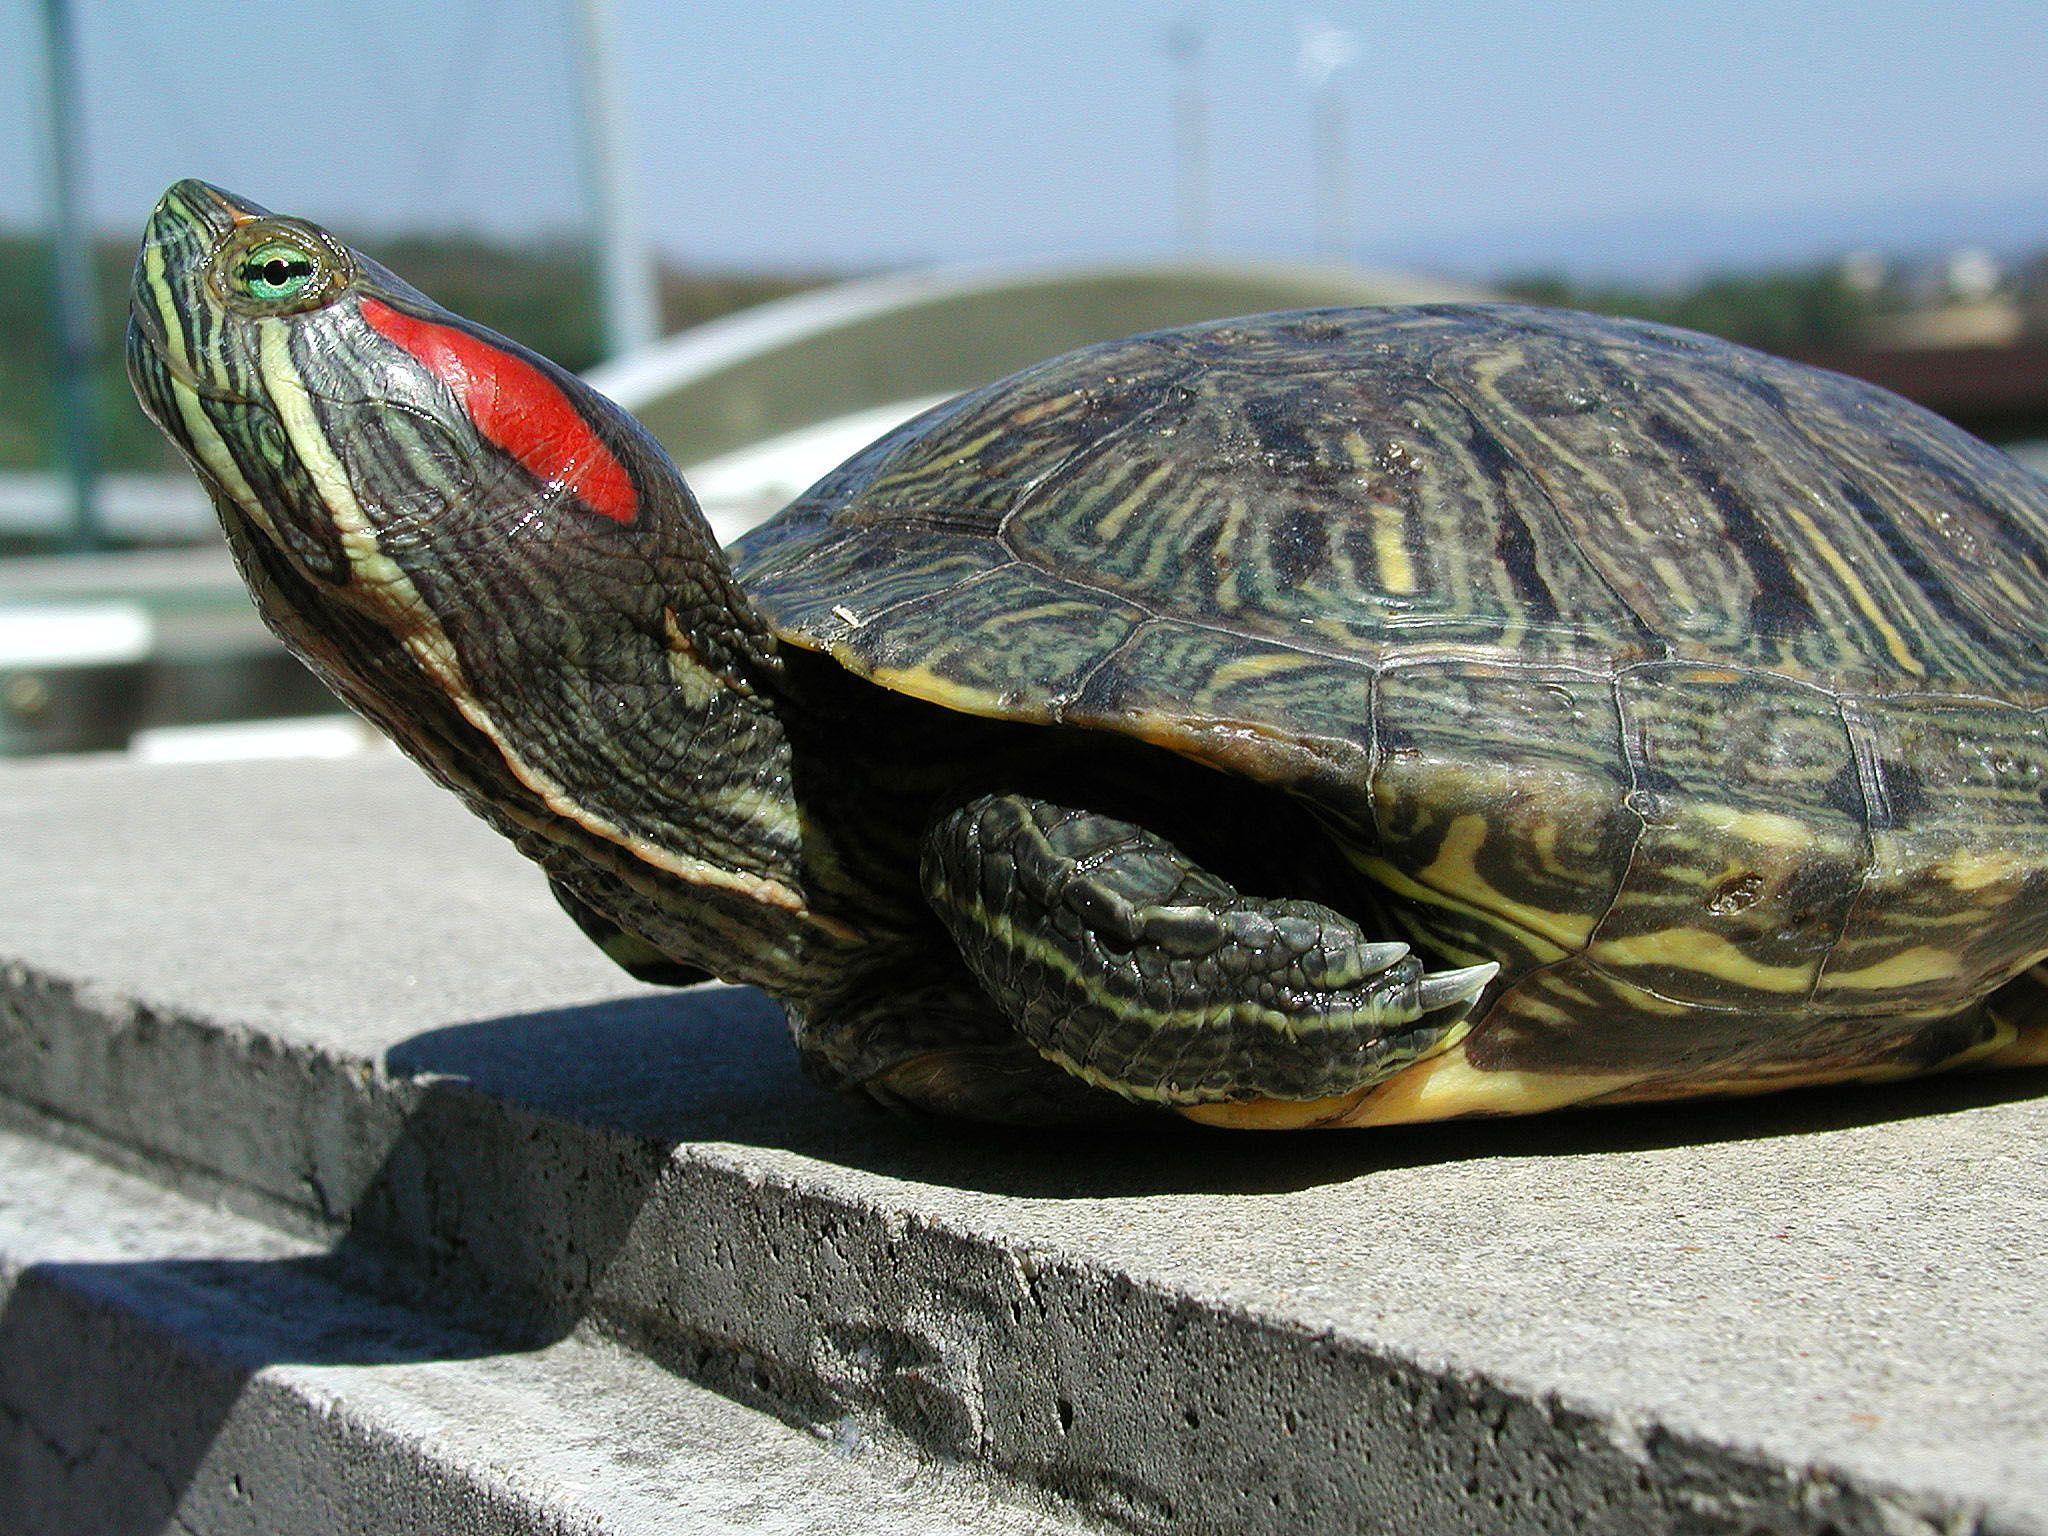 Alien Red Ear Sliders Greatly Outnumber Japan's Own Turtles